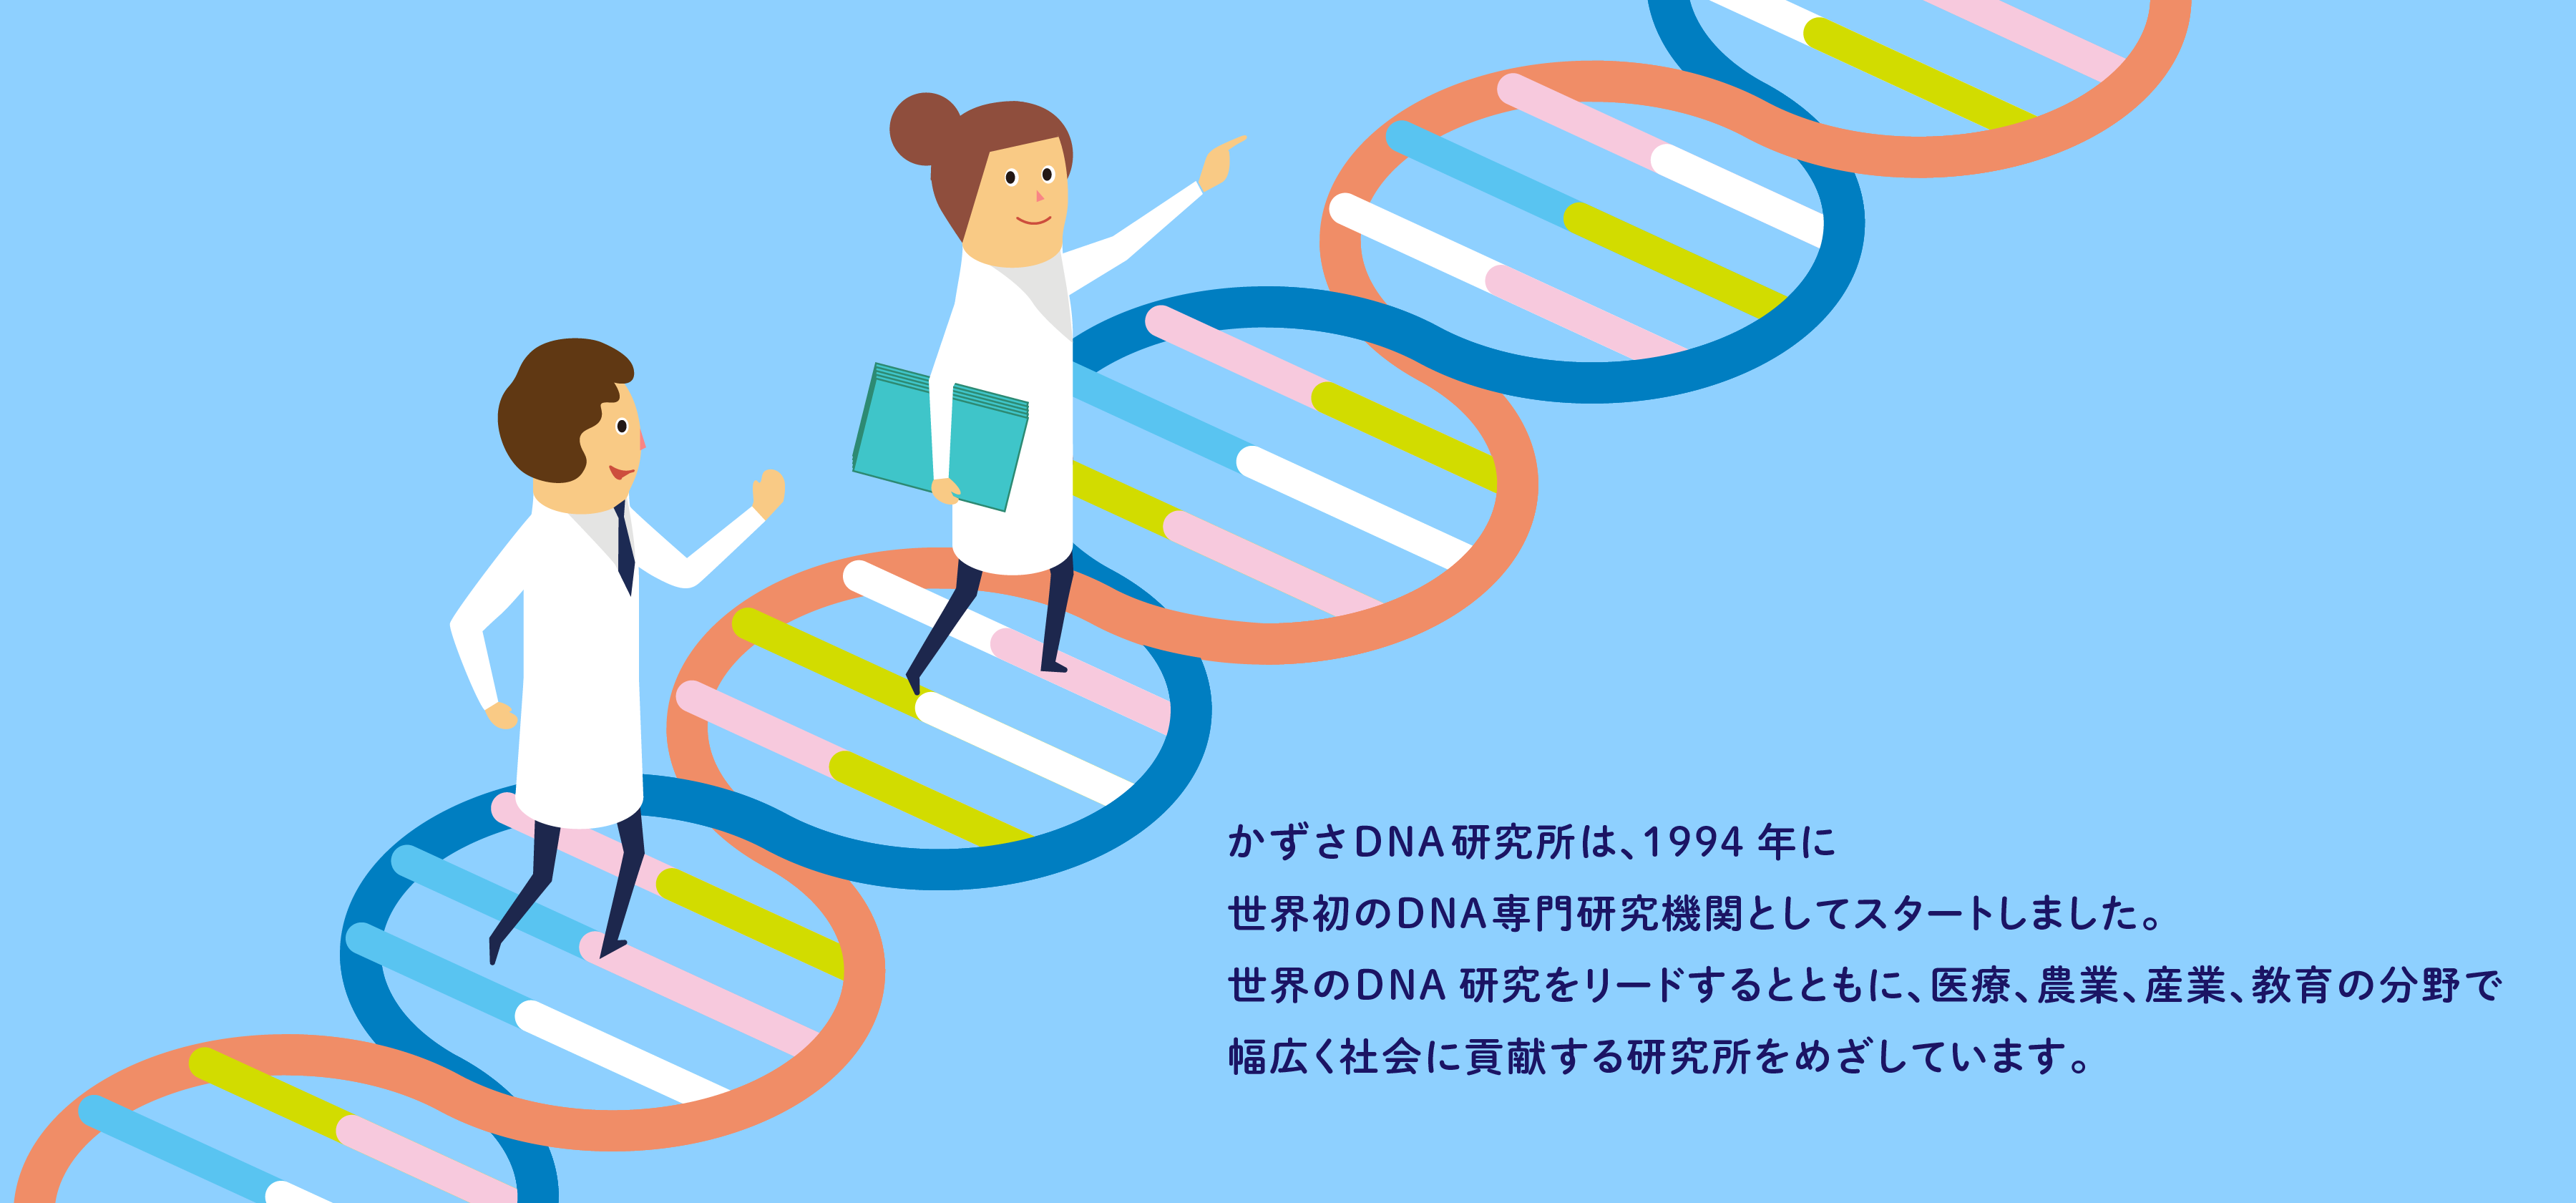 かずさ DNA 研究所は、1994 年に世界初の DNA 専門研究機関としてスタートしました。世界の DNA 研究をリードするとともに、医療、農業、産業、教育の分野で幅広く社会に貢献する研究所をめざしています。